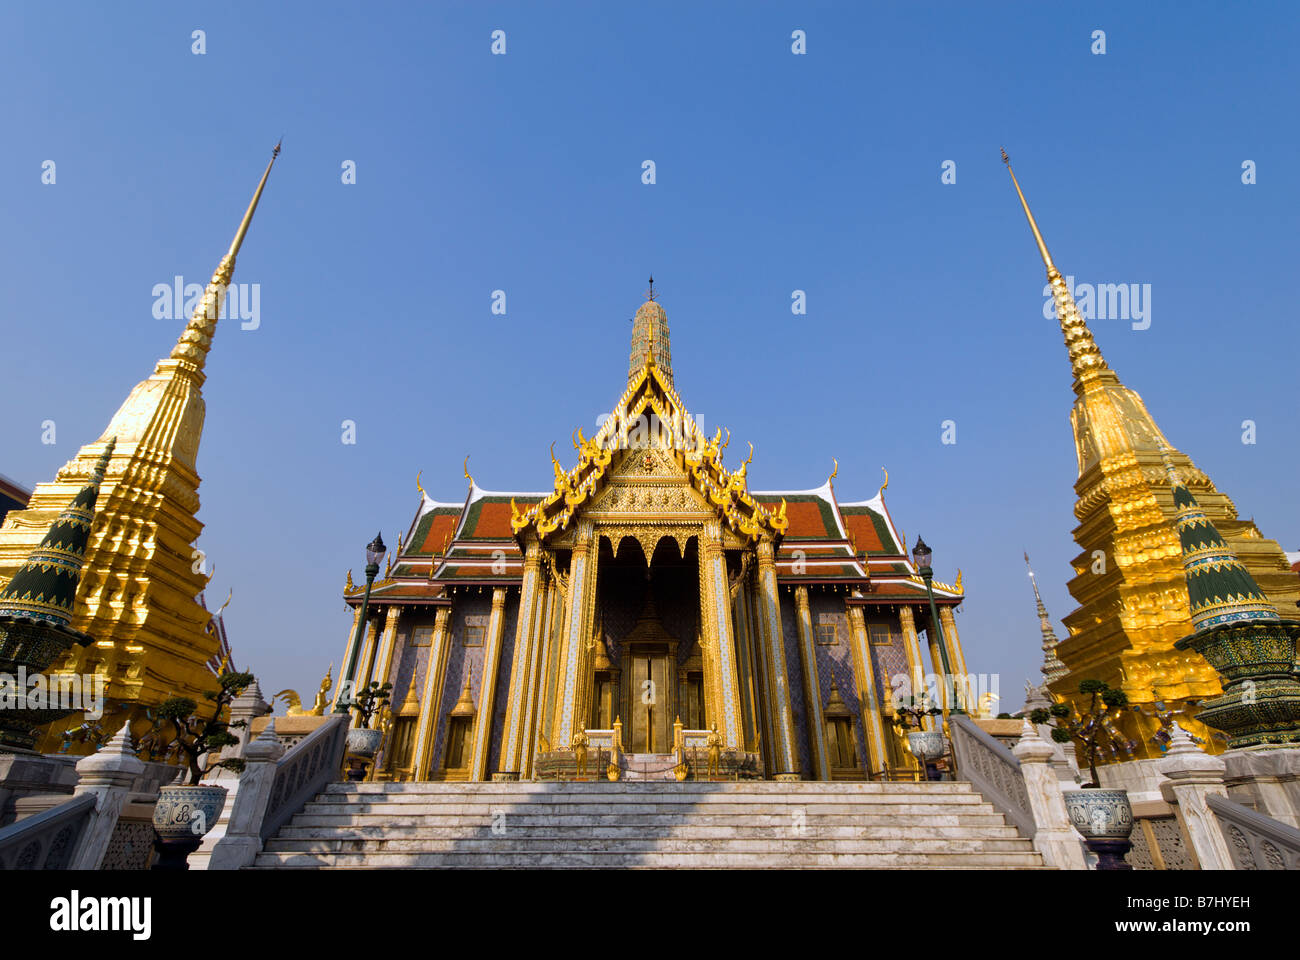 Das Royal Pantheon in der historischen buddhistischen Tempel Wat Phra Kaew und dem Grand Palace in Bangkok Zentralthailand Stockfoto